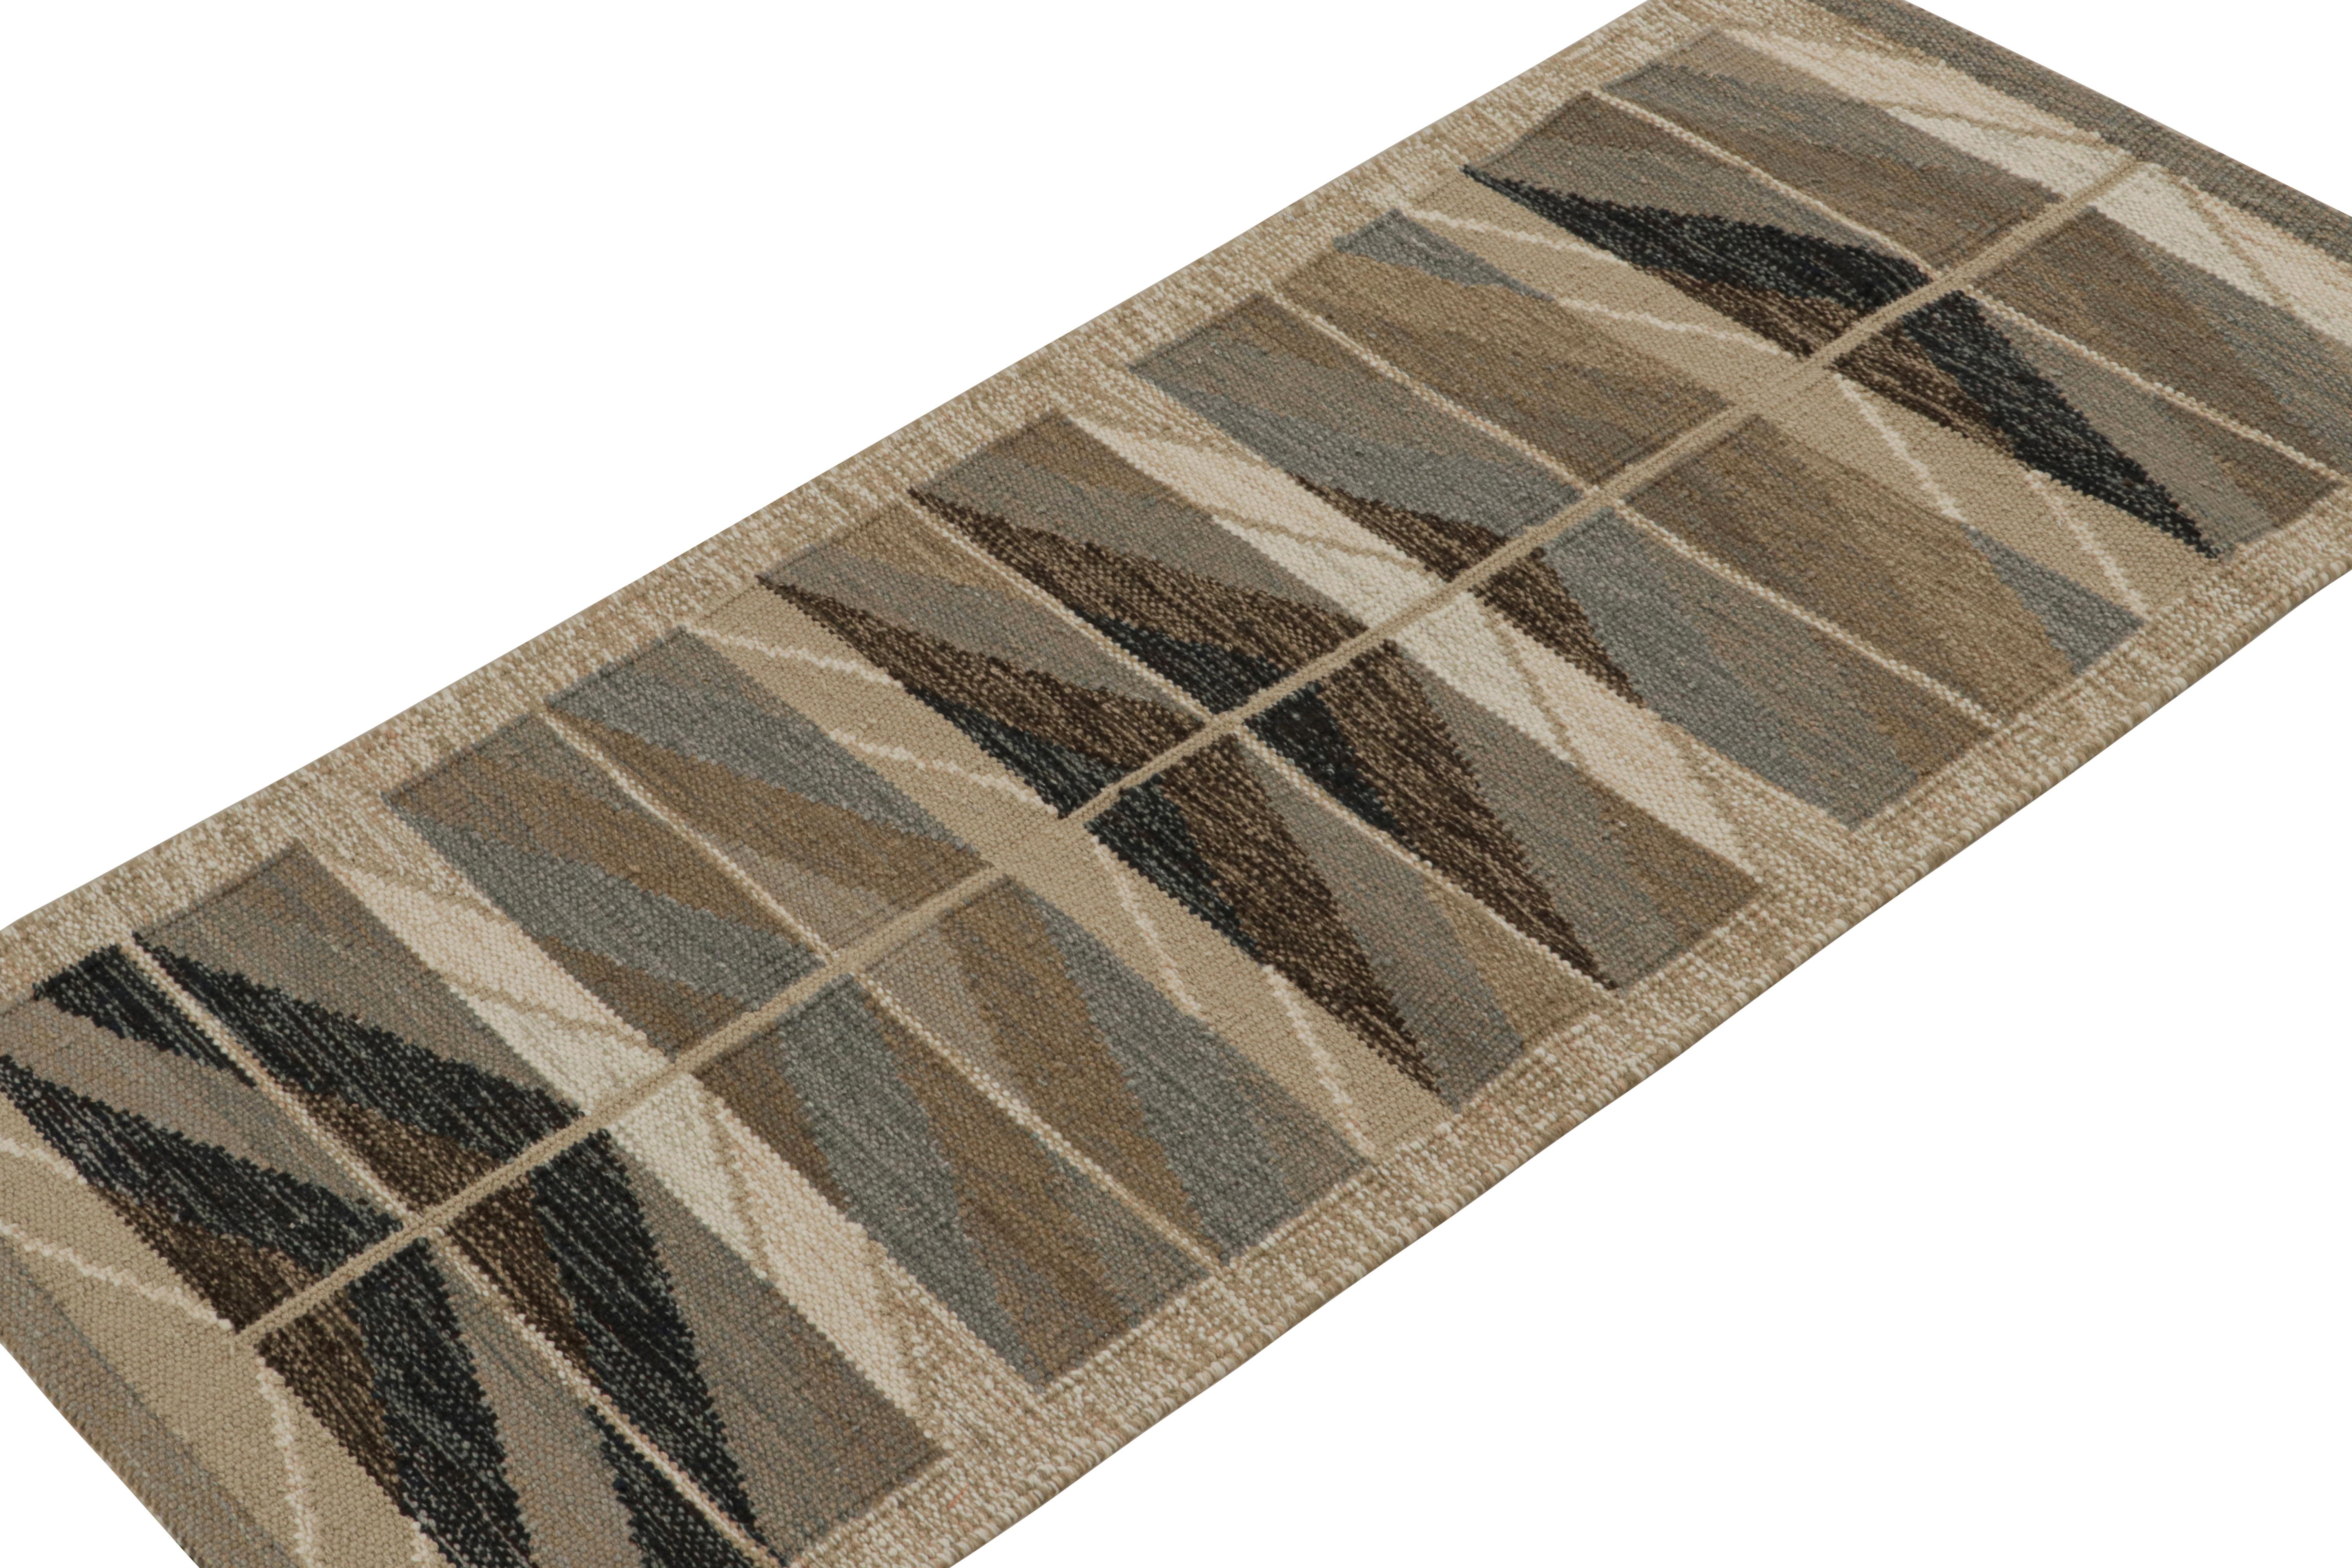 Ce tapis 3x7 est un kilim de style suédois de la collection de tapis scandinaves de Rug & Kilim. Tissé à la main en laine, coton et fils naturels, ce tissage plat s'inspire des tapis Rollakan et Rya vintage de style déco suédois. 

Sur le Design :